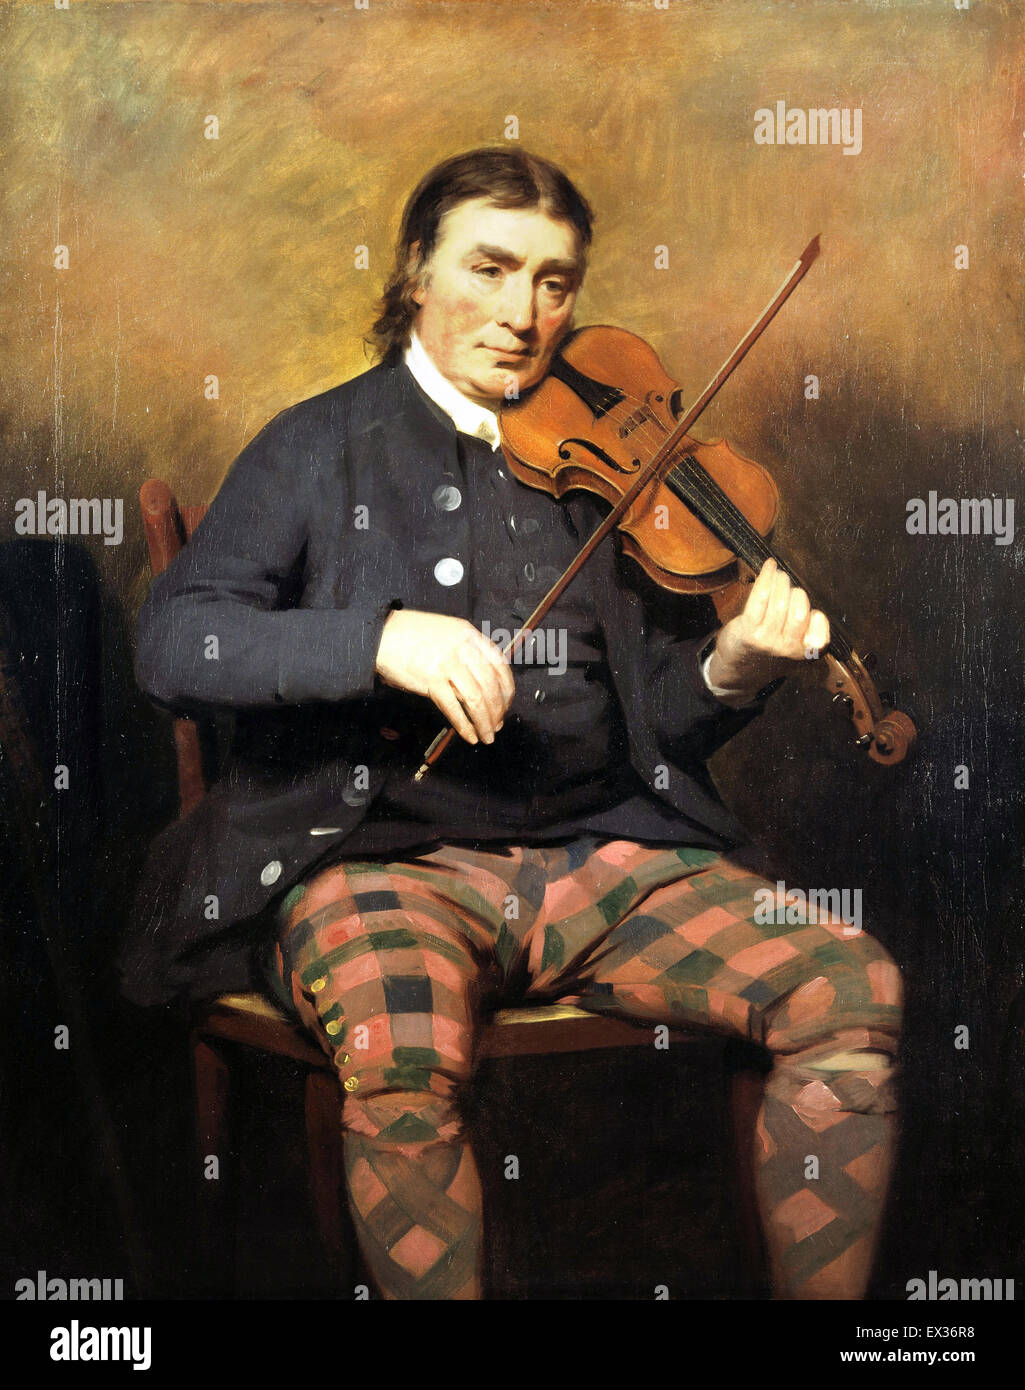 Henry Raeburn, Niel Gow, 1727-1807. Geiger und Komponist. 1787-Öl auf Leinwand. National Gallery of Scotland, Edinburgh Schottland Stockfoto